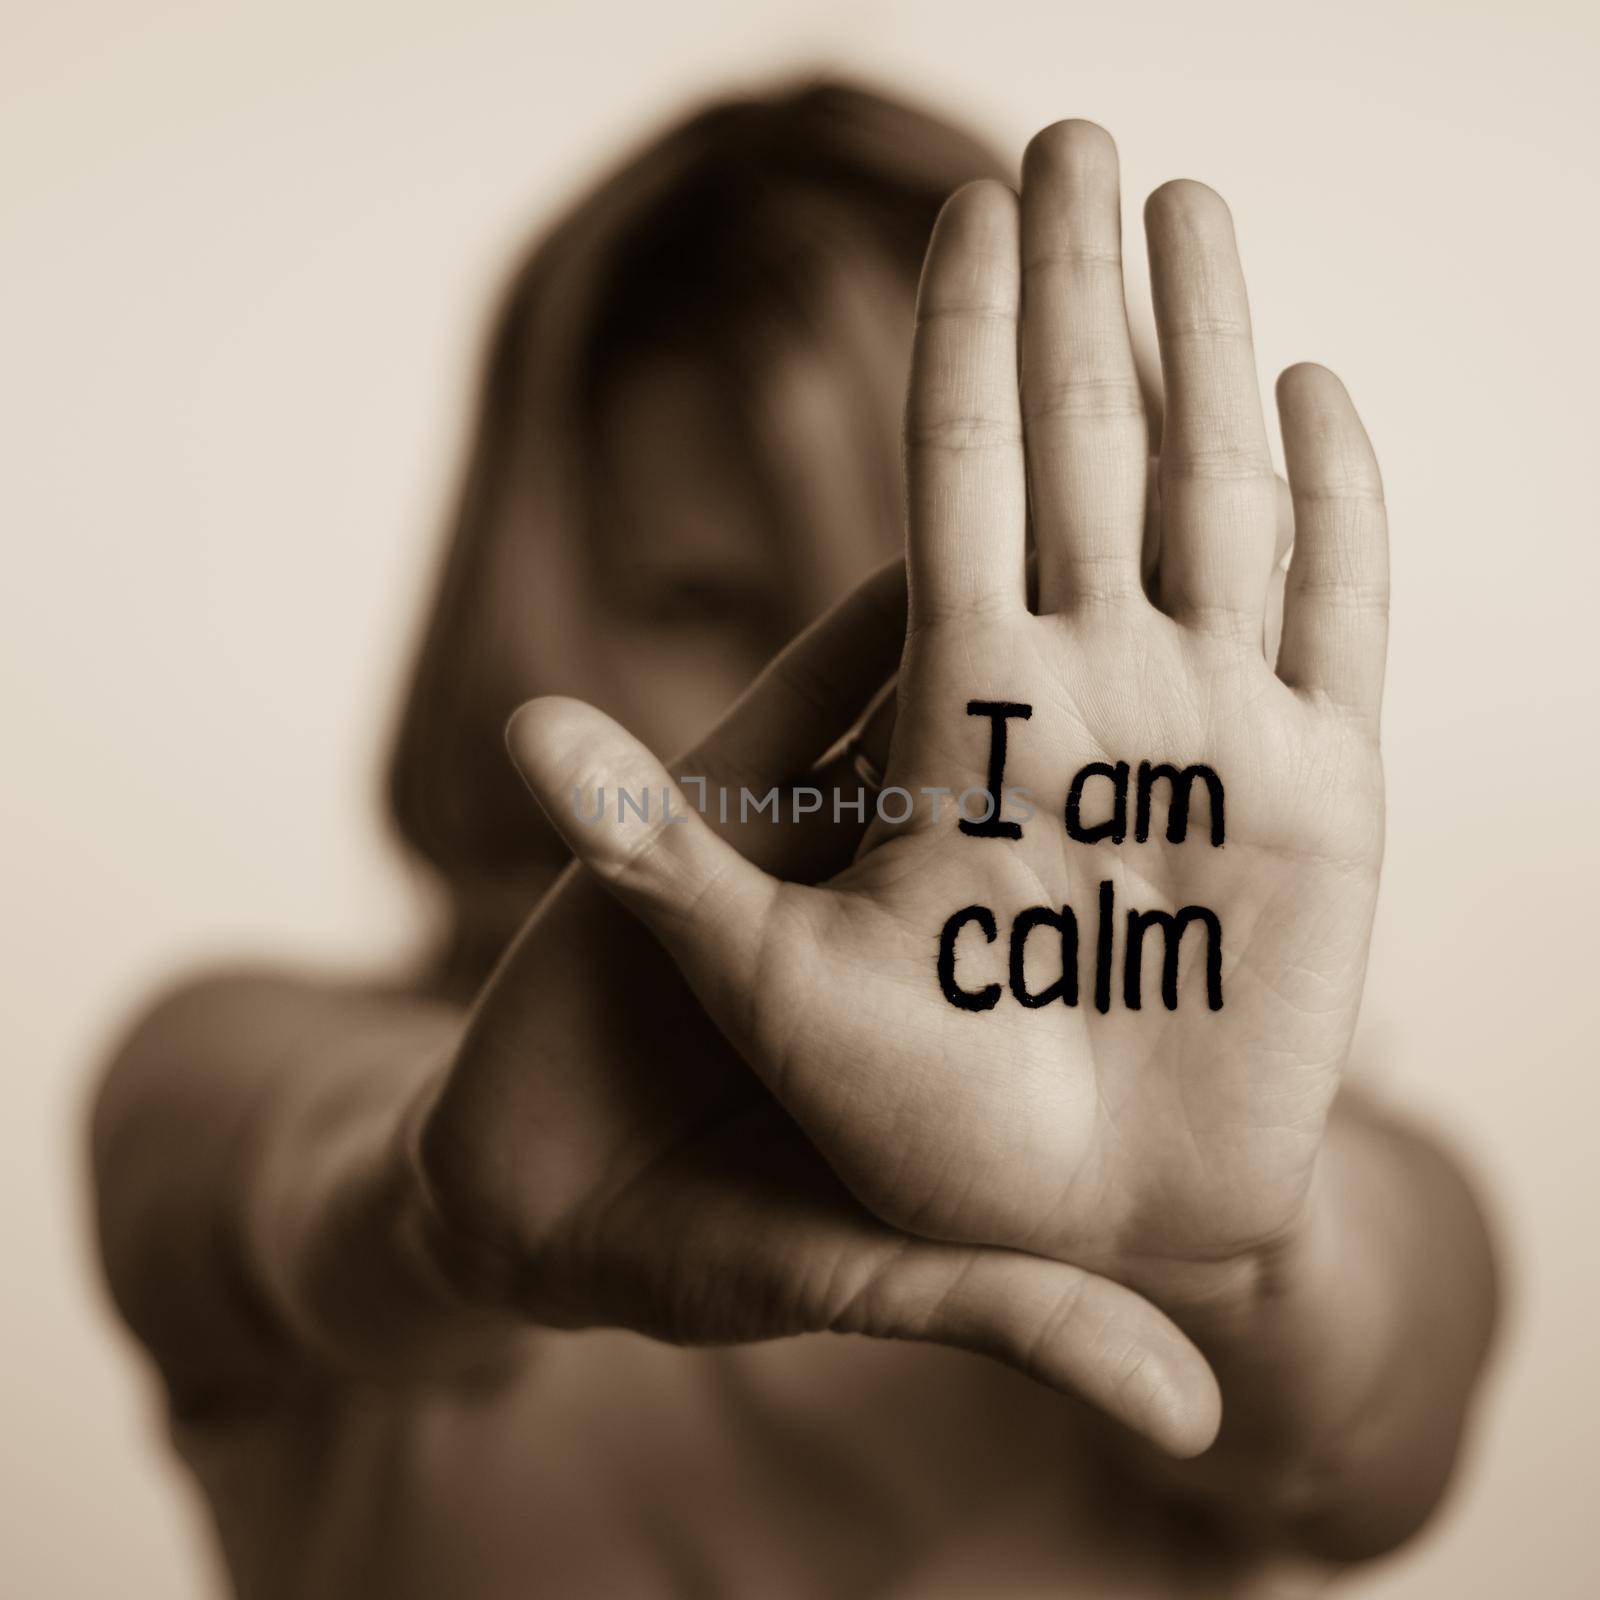 sing I am calm by alf061